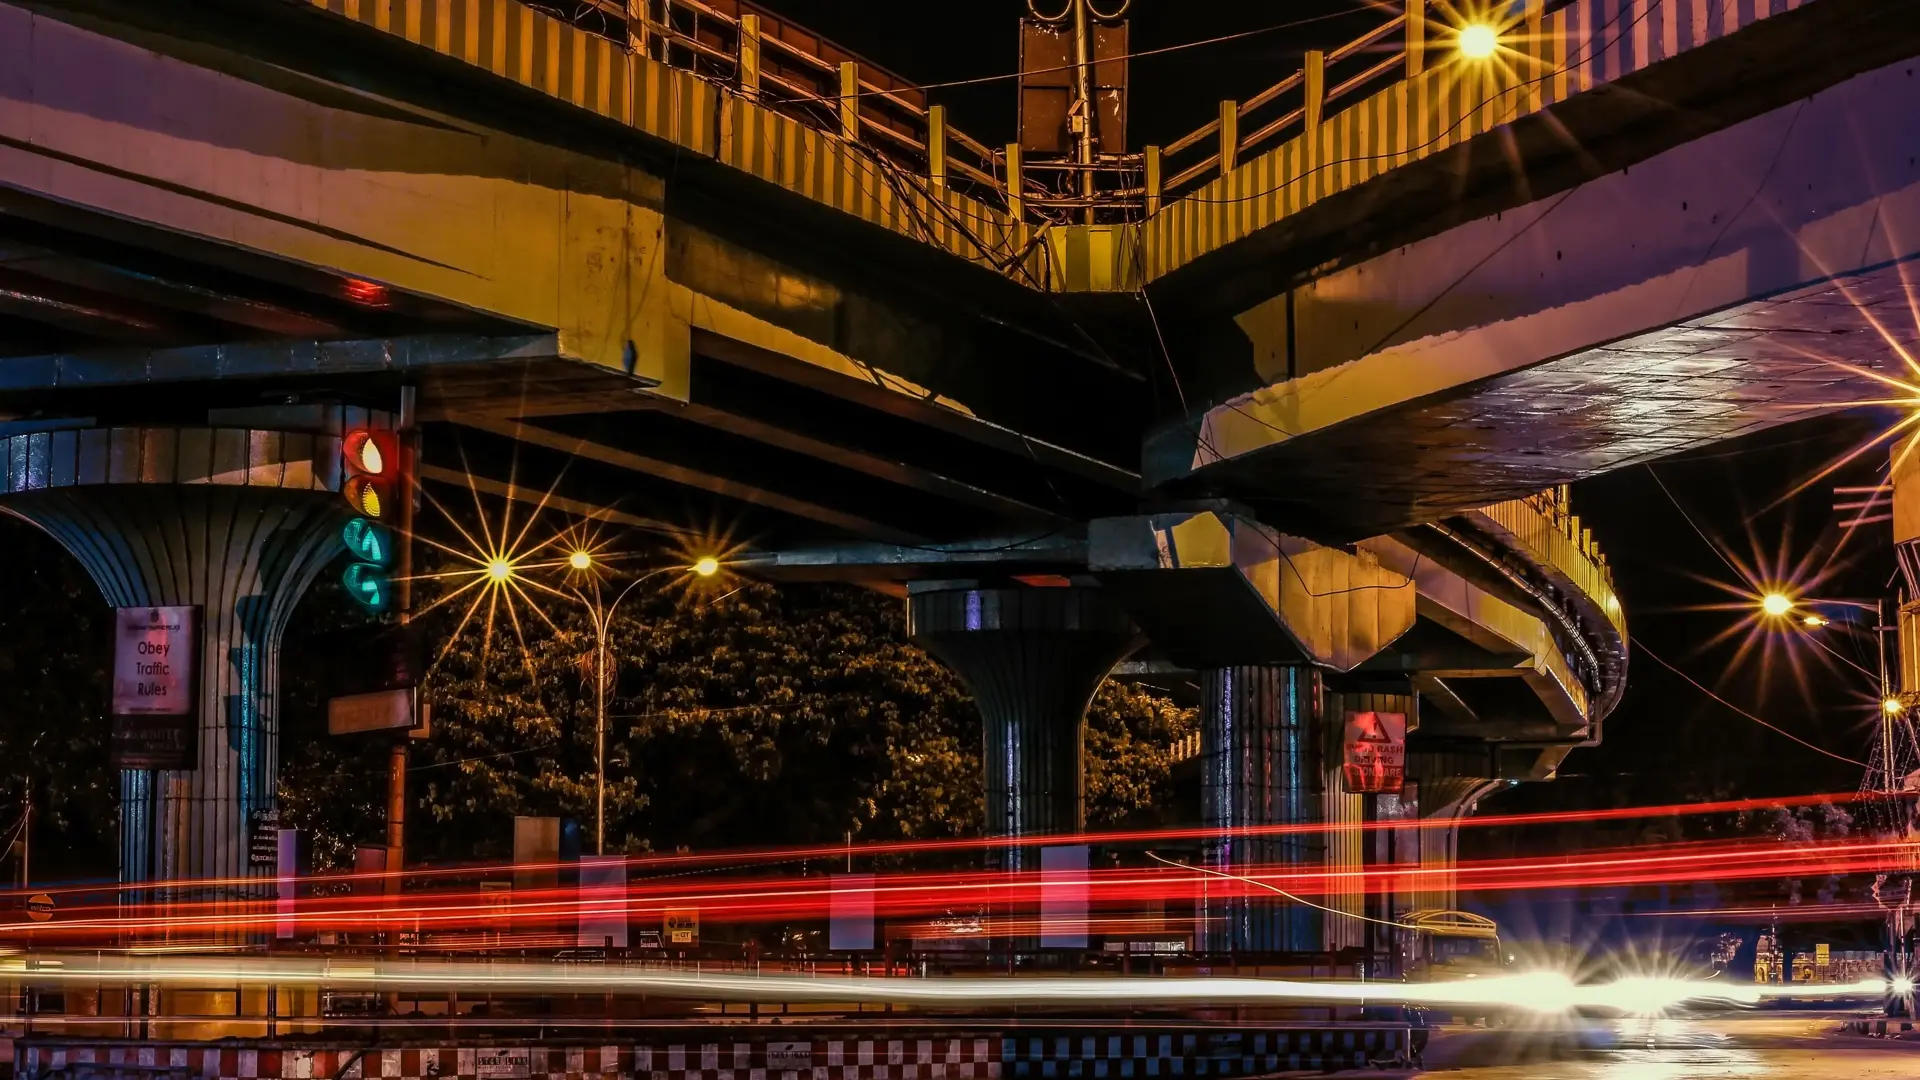 Traffic at night time